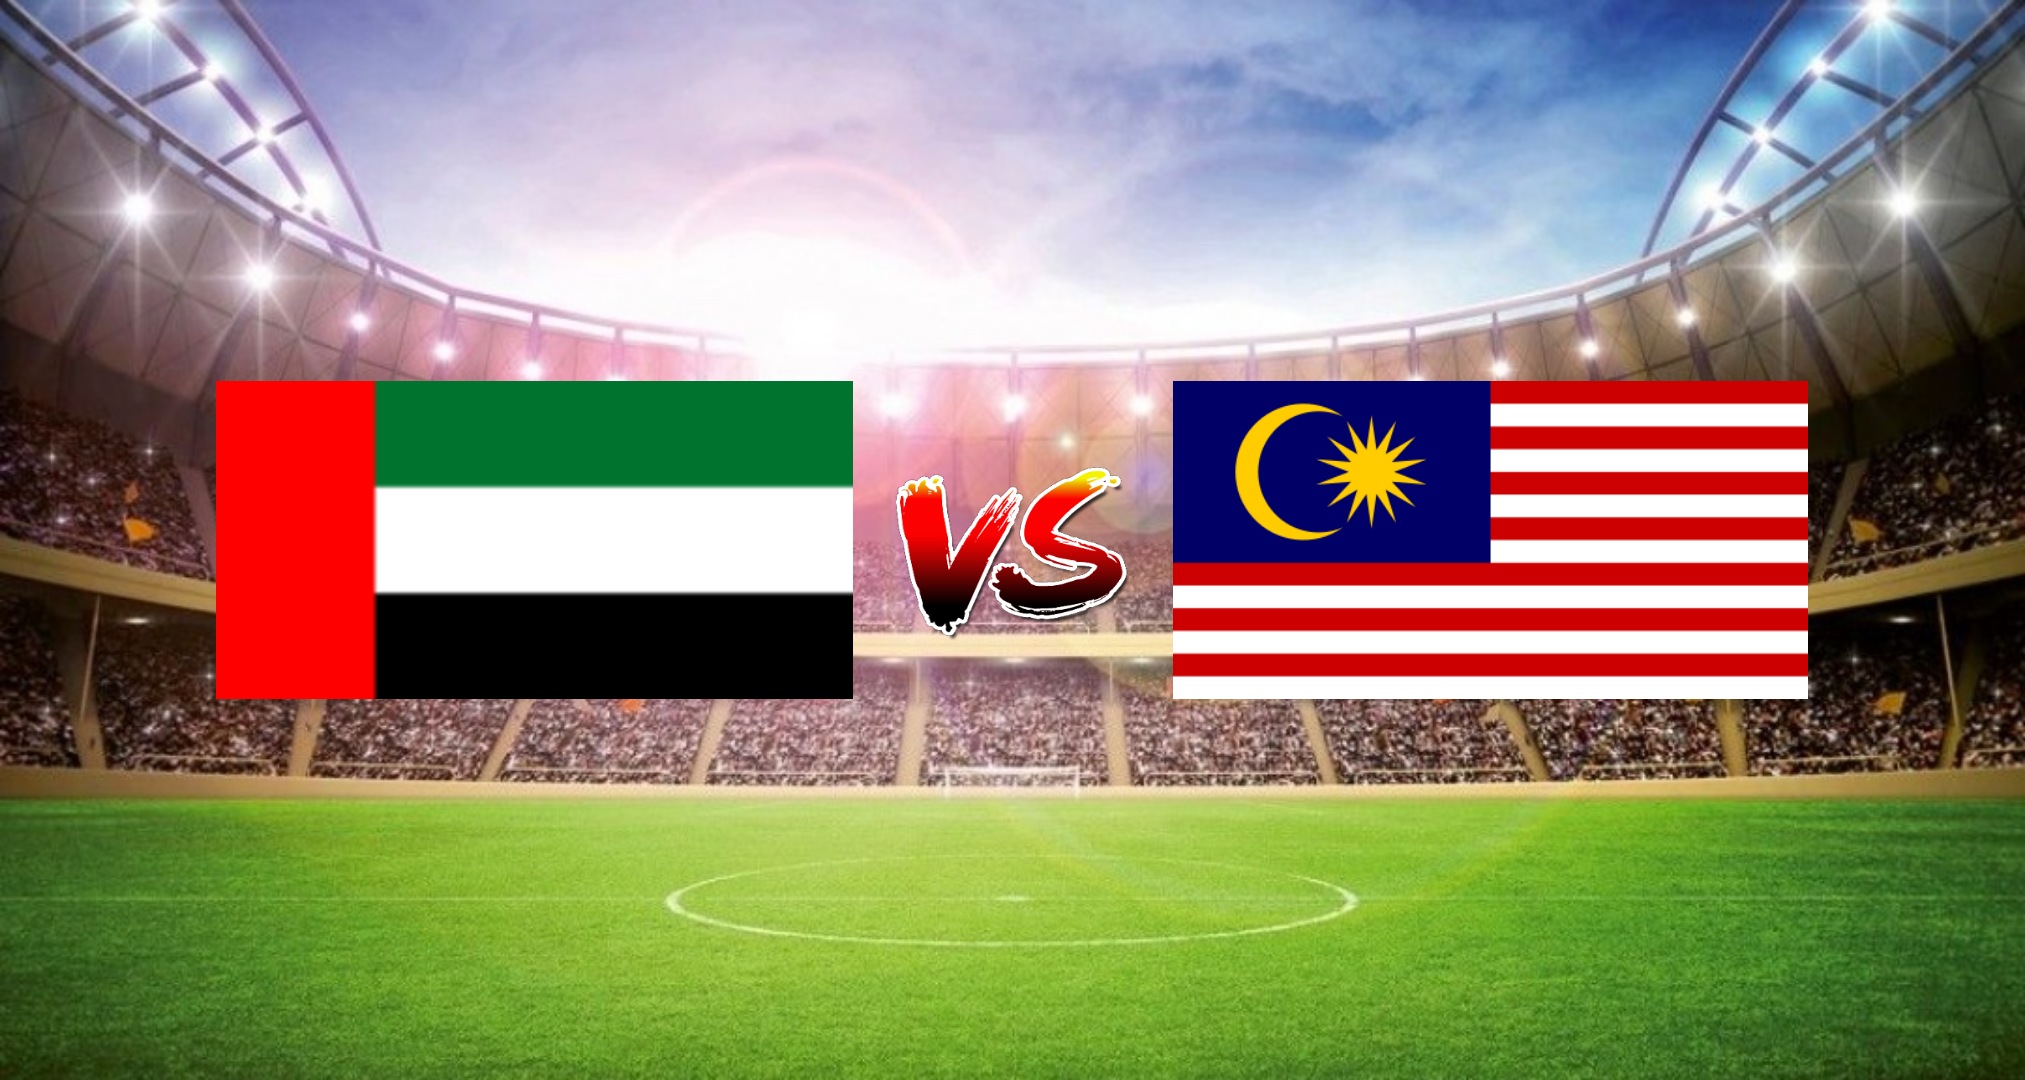 Bola sepak malaysia vs uae